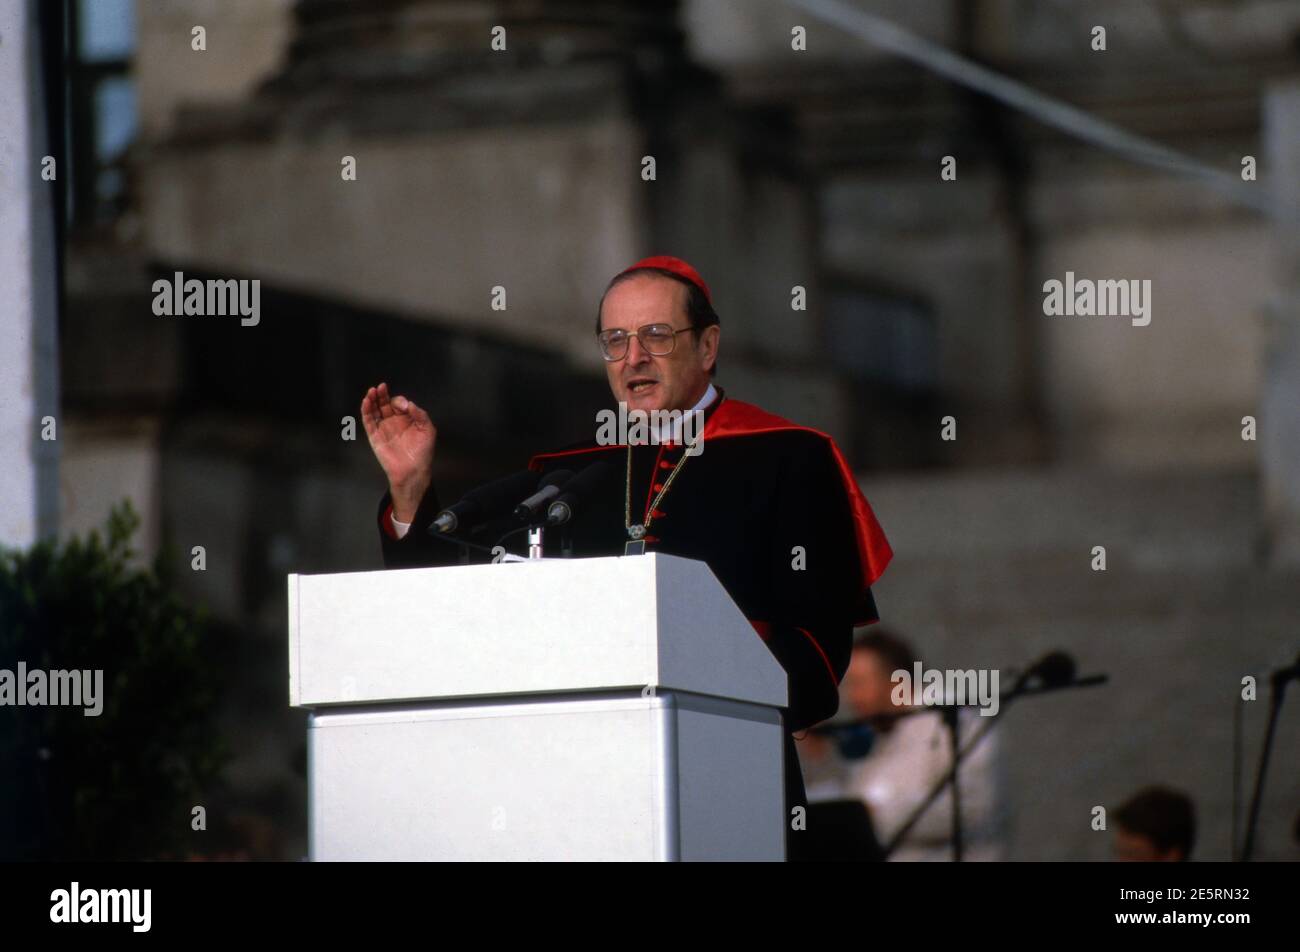 JOACHIM KARDINAL MEISNER, deutscher Theologe, Erzbischof von Köln, 1990. JOACHIM KARDINAL MEISNER, deutscher Theologe, Erzbischof von Köln, 1990. Stockfoto